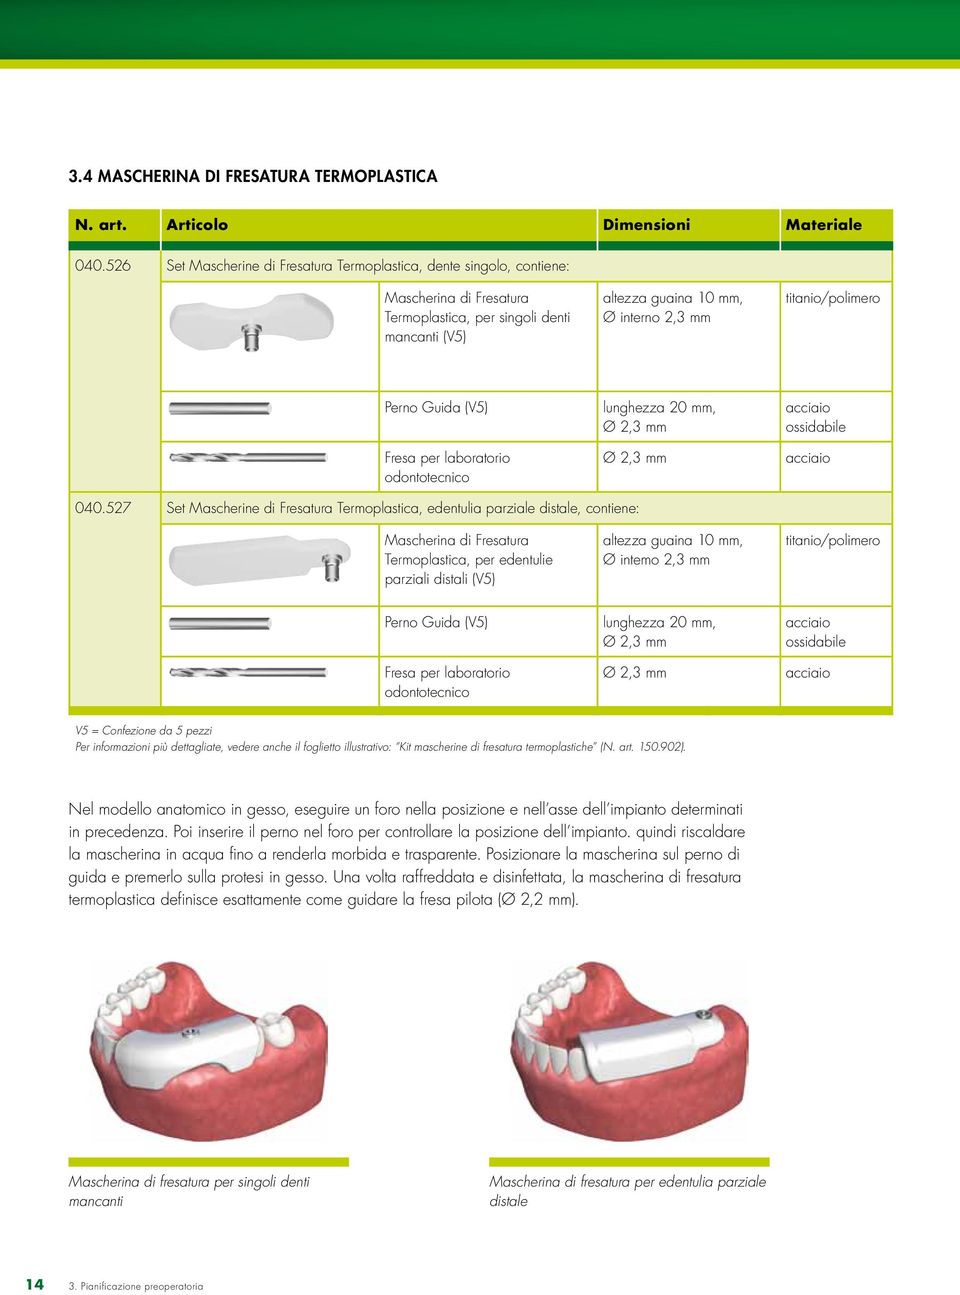 Perno Guida (V5) Fresa per laboratorio odontotecnico lunghezza 20 mm, Ø 2,3 mm Ø 2,3 mm acciaio ossidabile acciaio 040.